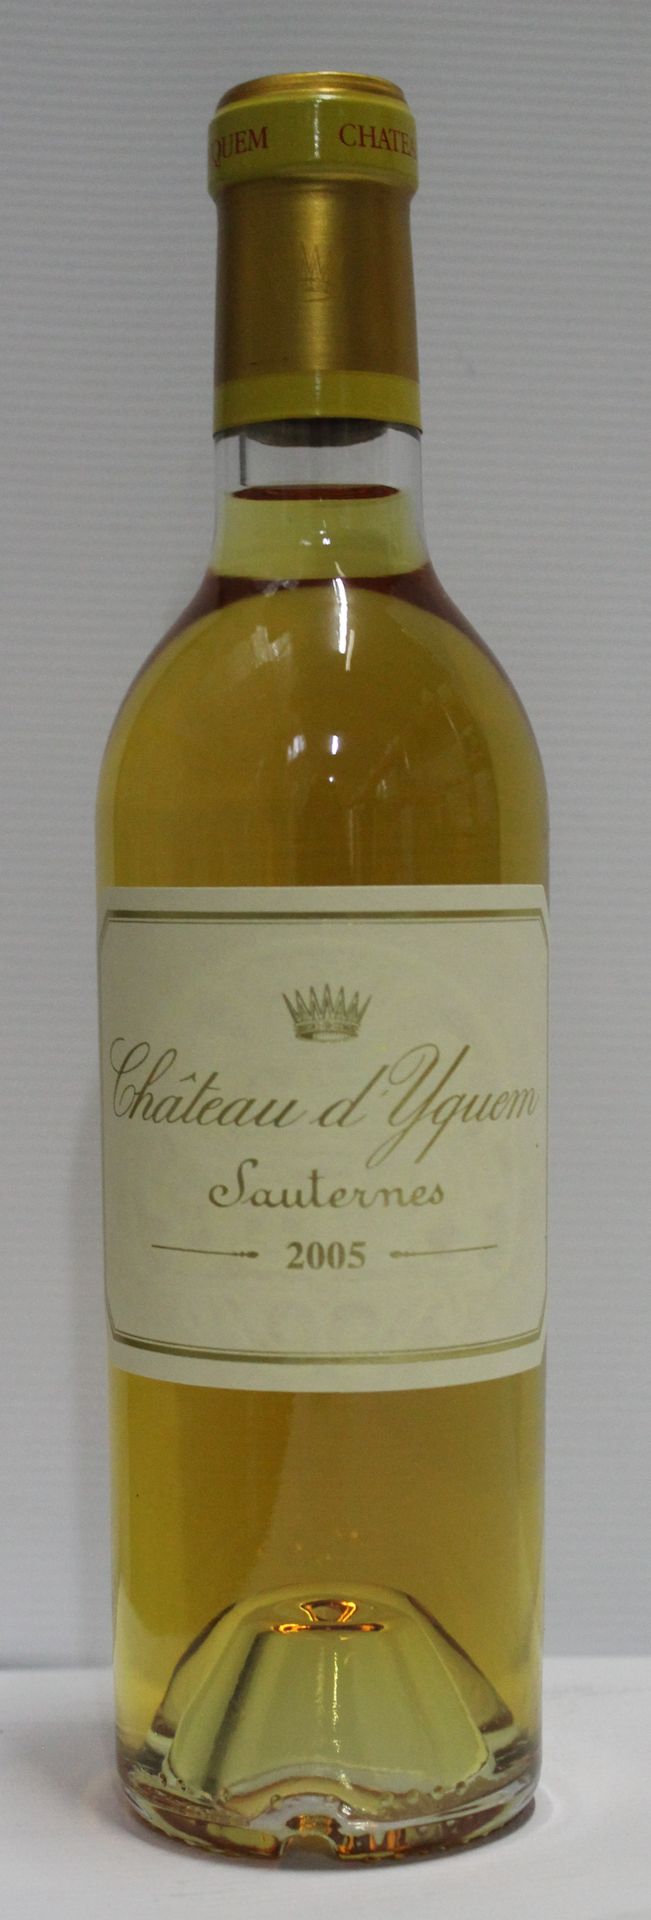 Null 1瓶37,5cl - 1er Cru supérieur Sauternes - Château d'Yquem - 2005年甜白葡萄酒

瓶身完美&hellip;